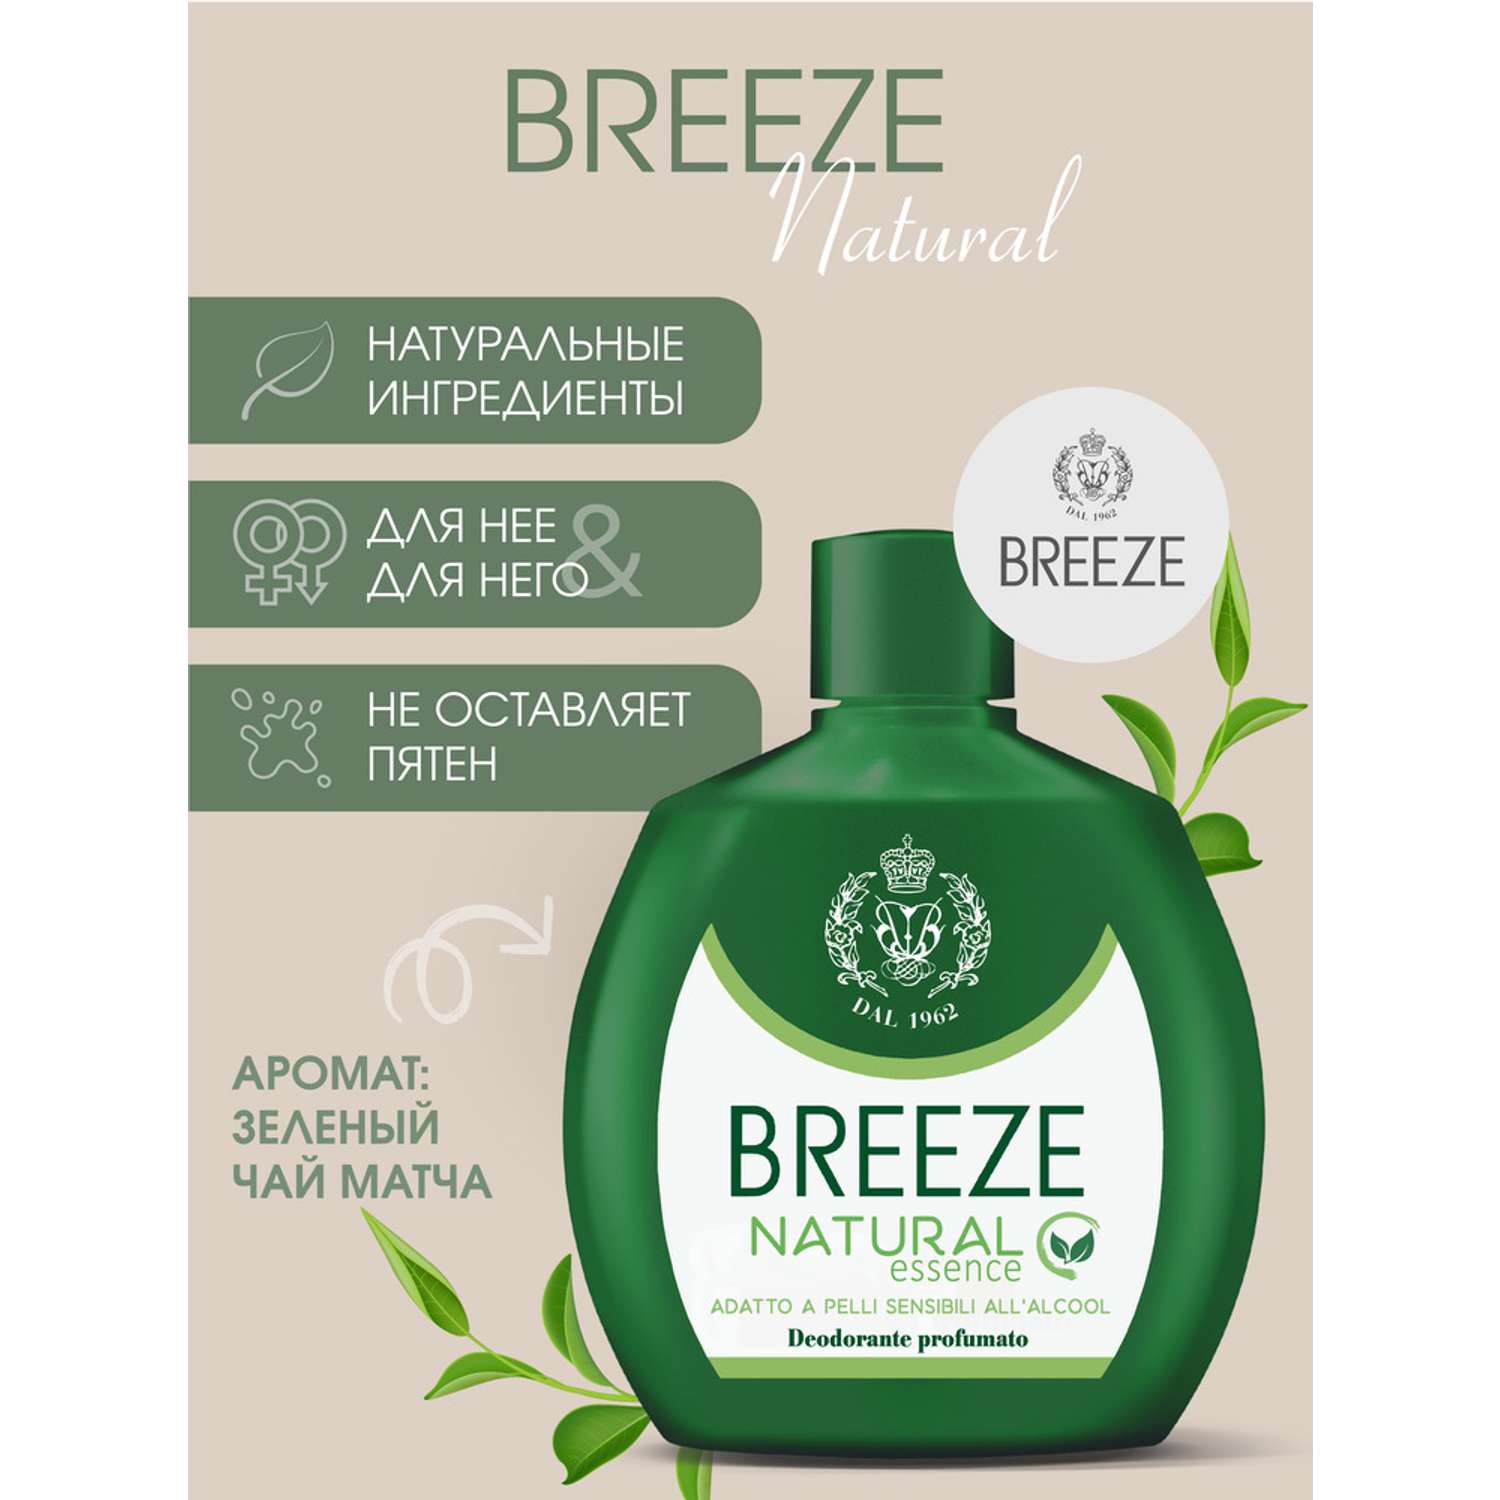 Дезодорант парфюмированный BREEZE natural essence 100мл - фото 1